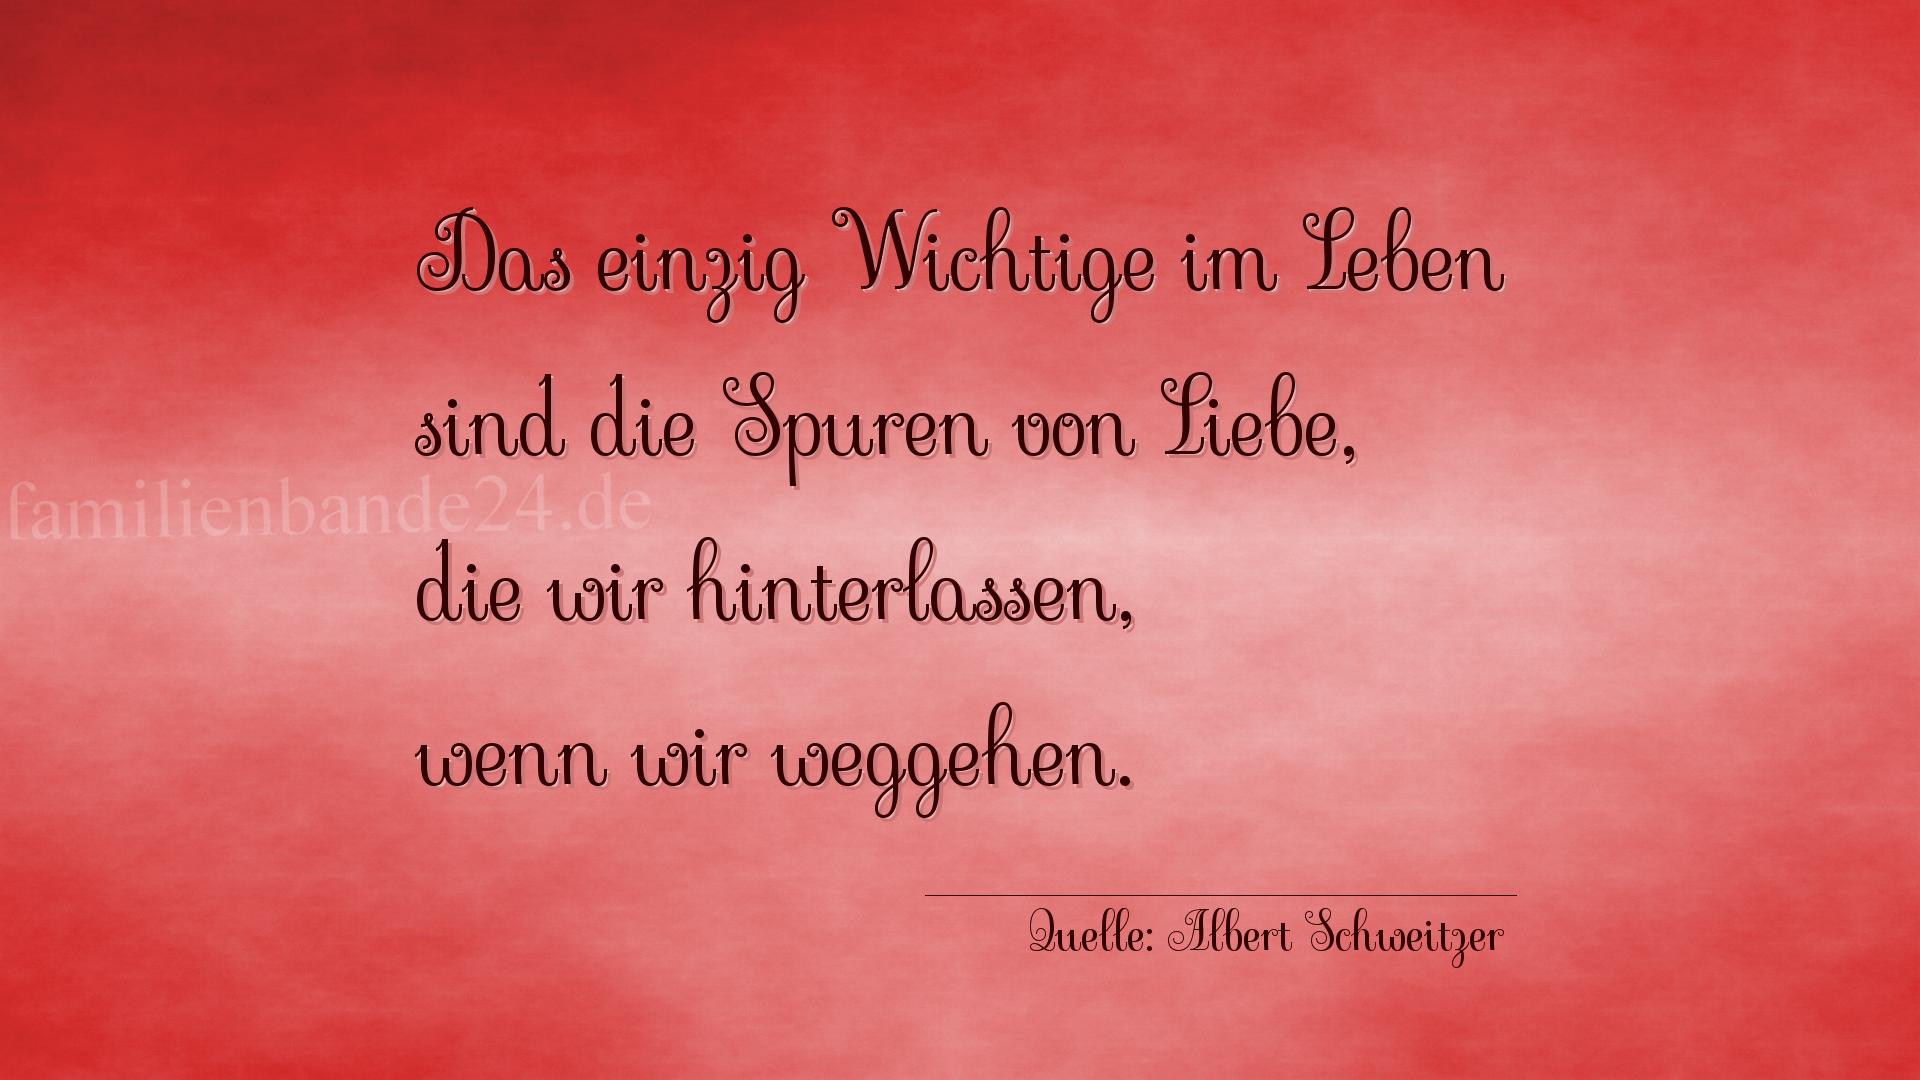 Aphorismus Nr. 1220 (von Albert Schweitzer): "Das einzig Wichtige im Leben sind die Spuren von Liebe, d [...]